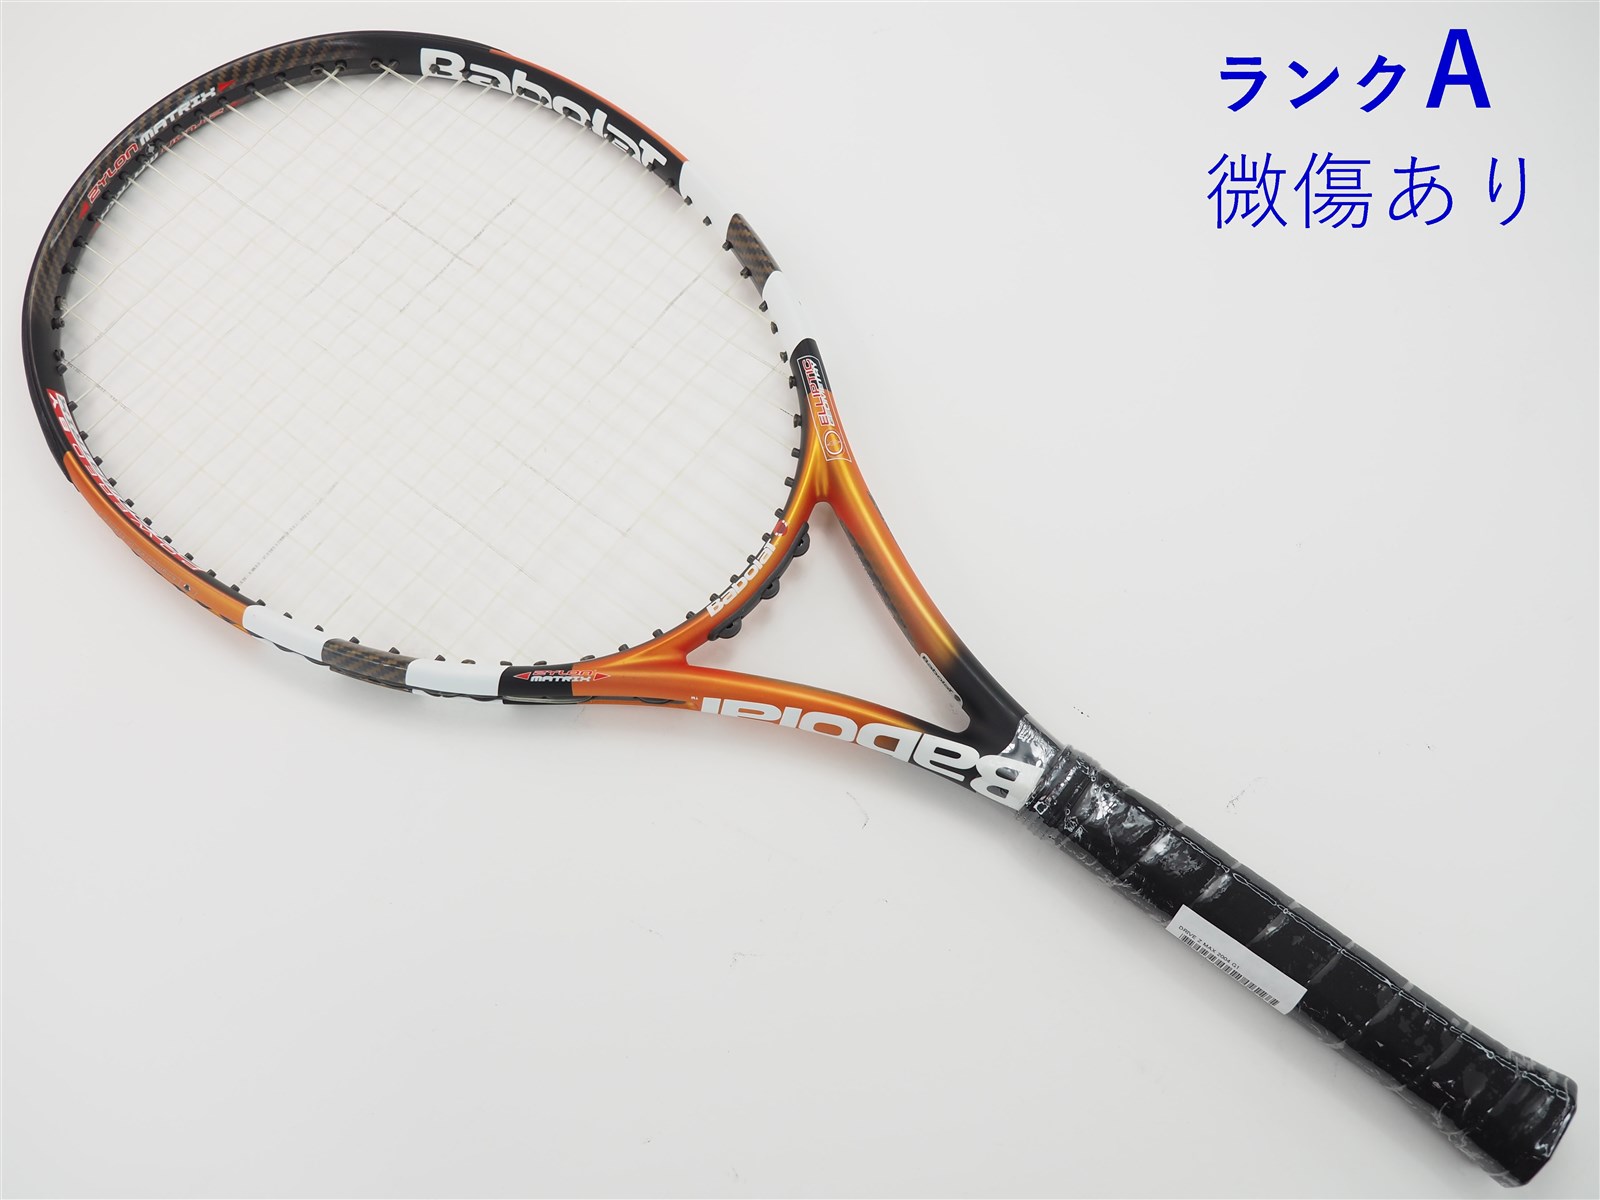 27mm重量テニスラケット バボラ ドライブ ゼット 110 (G1)BABOLAT 